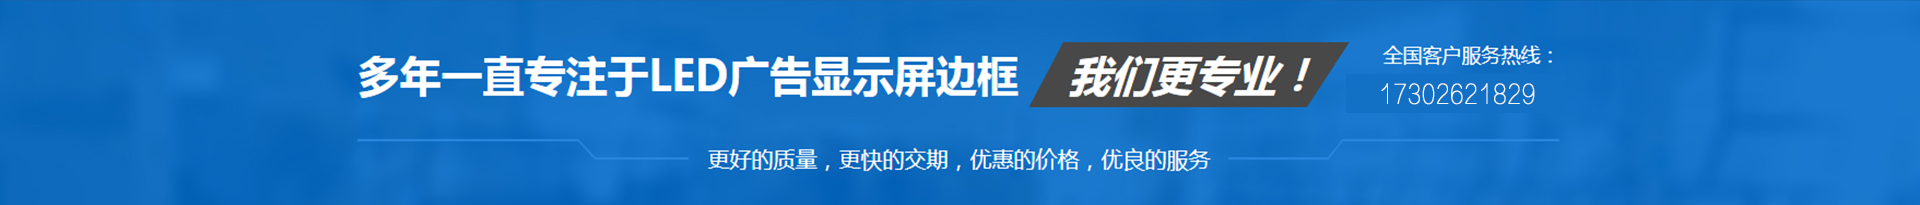 專(zhuān)業(yè)LED廣告顯示屏邊框